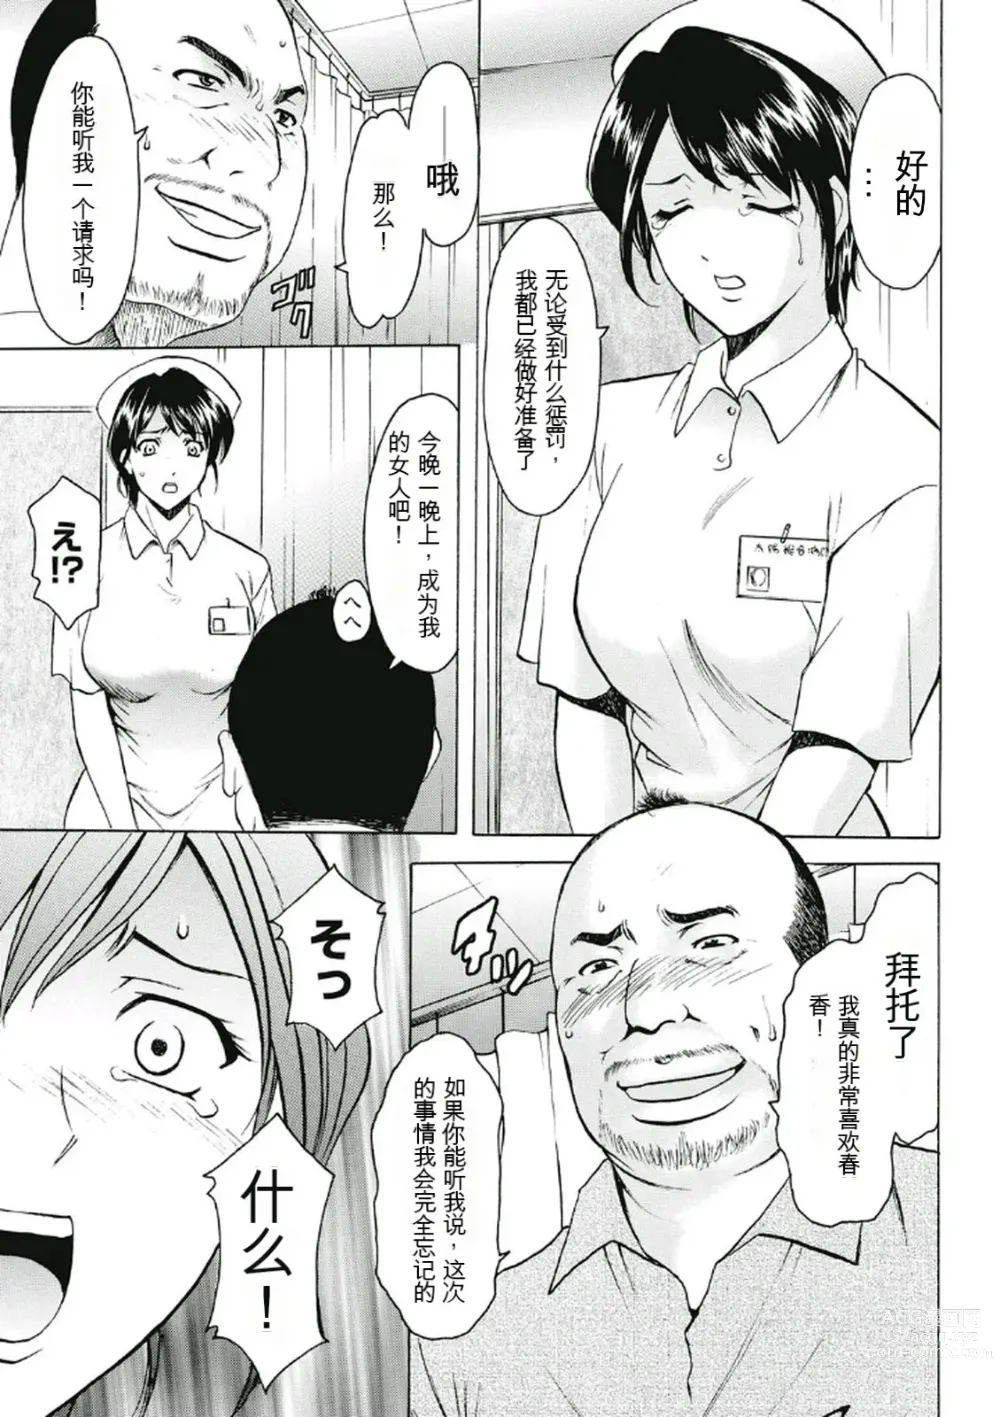 Page 11 of manga Chijoku Byoutou -Hakui no Datenshi-